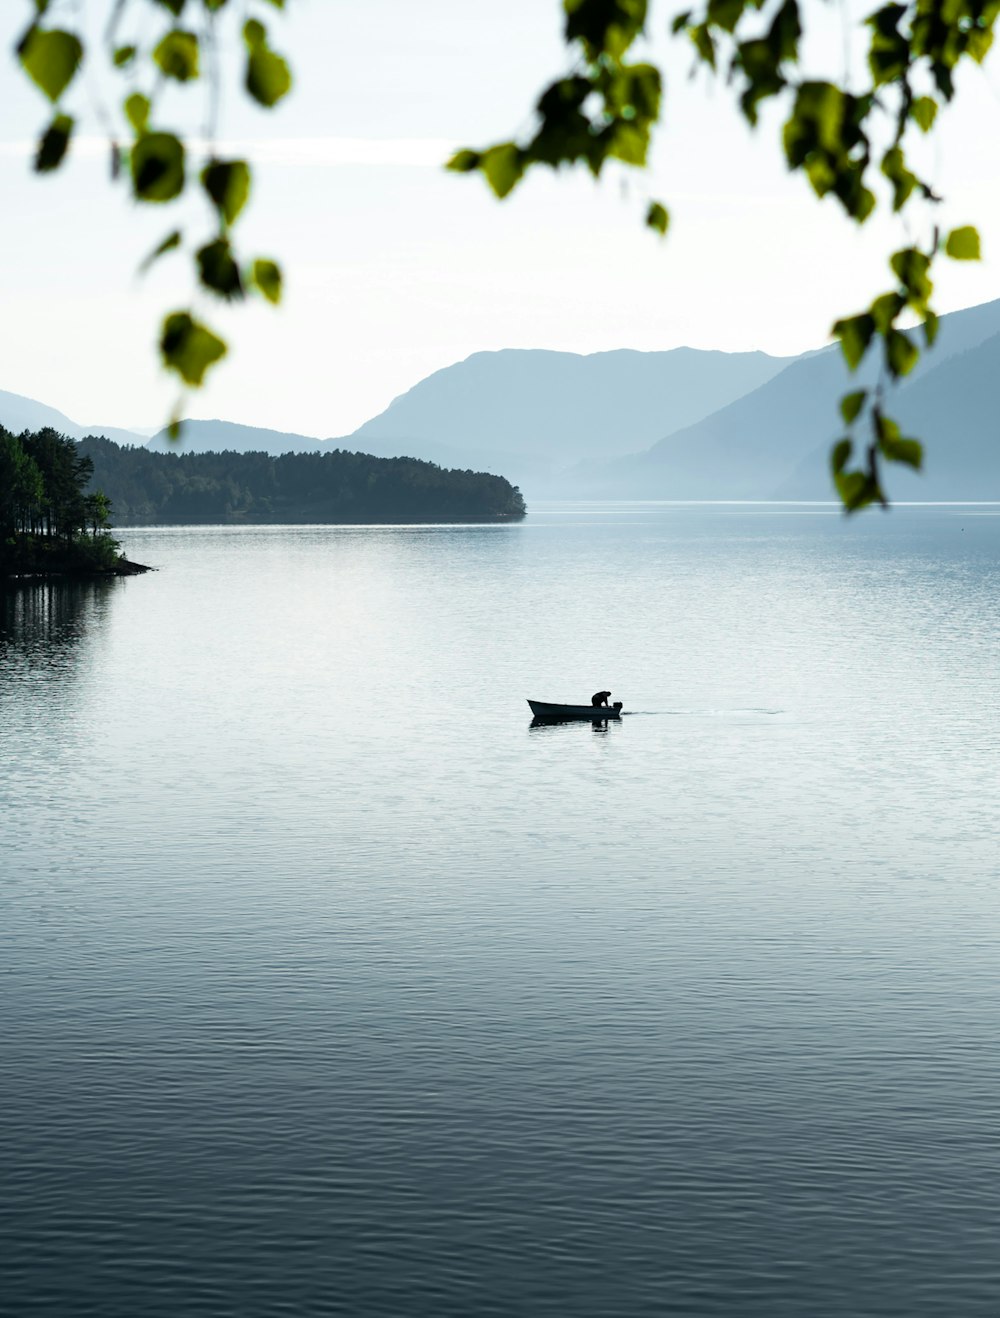 personne en chemise noire équipant sur un bateau sur le lac pendant la journée